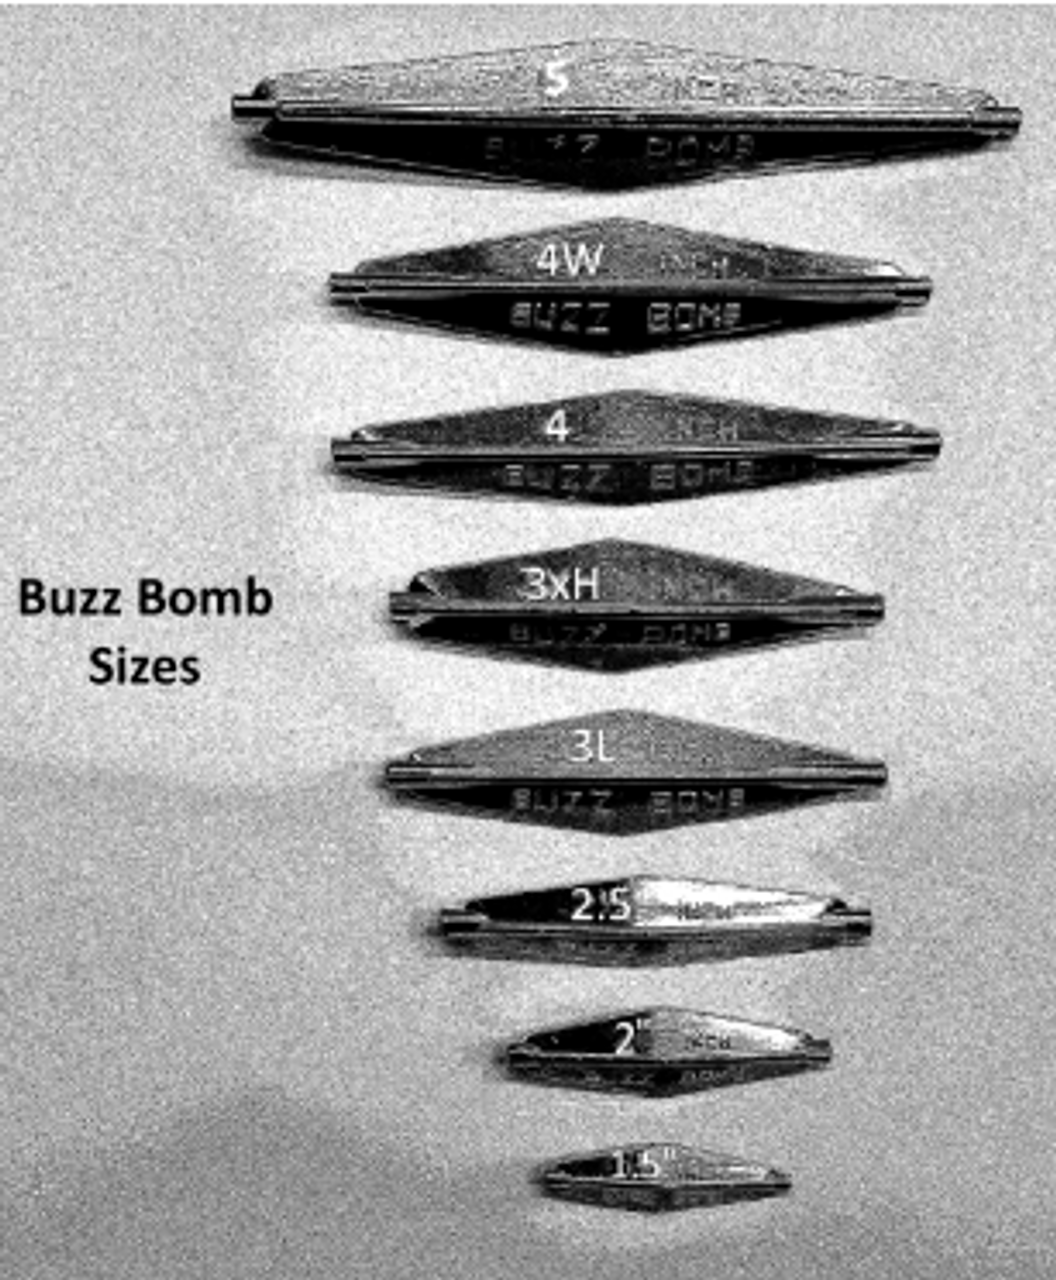 Buzz Bomb 4"